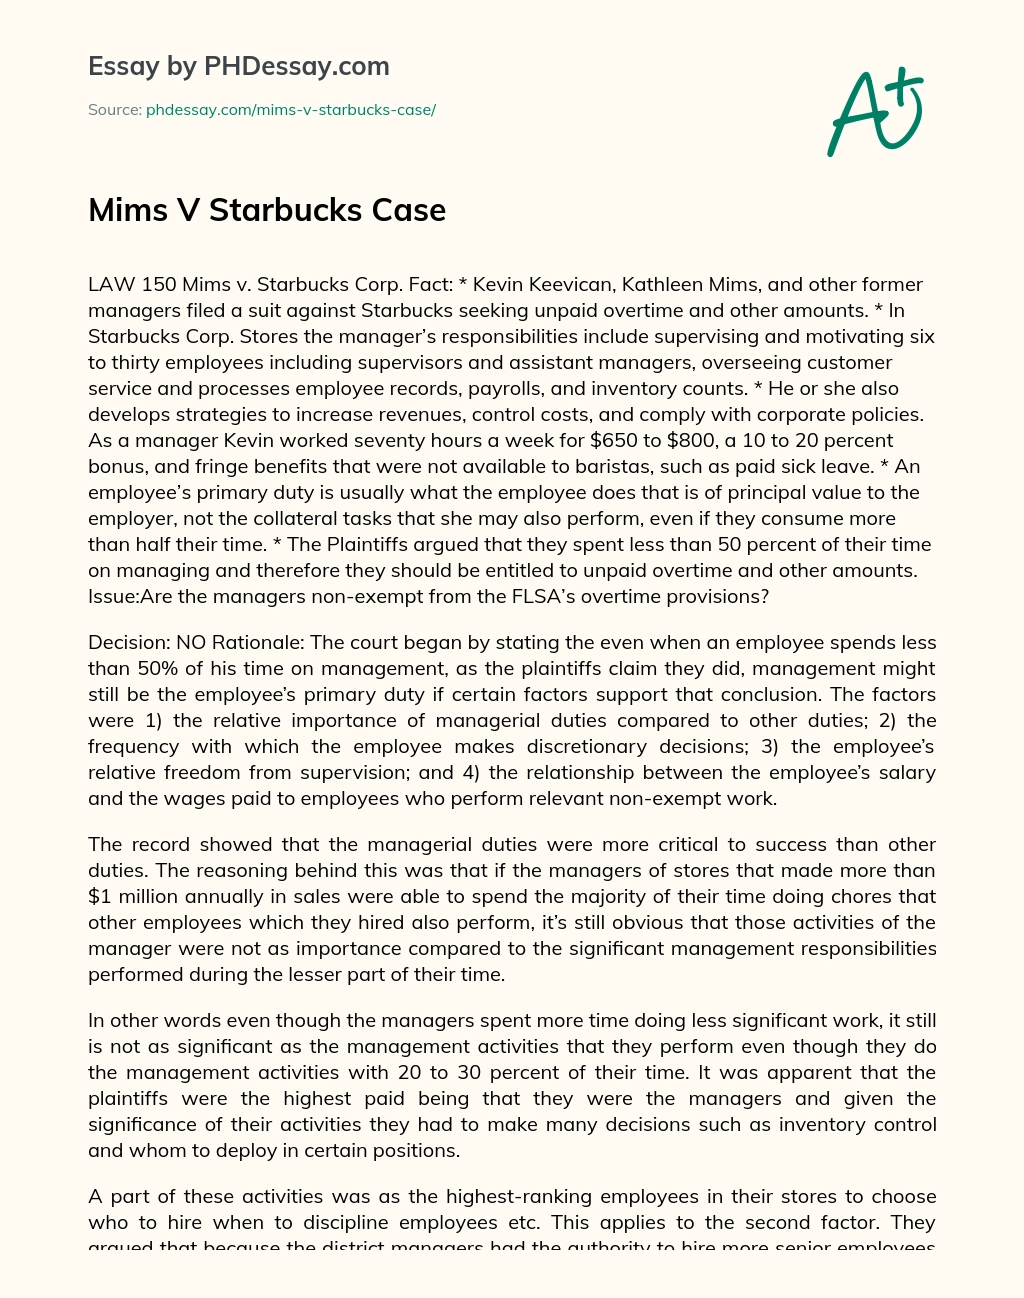 Mims V Starbucks Case essay